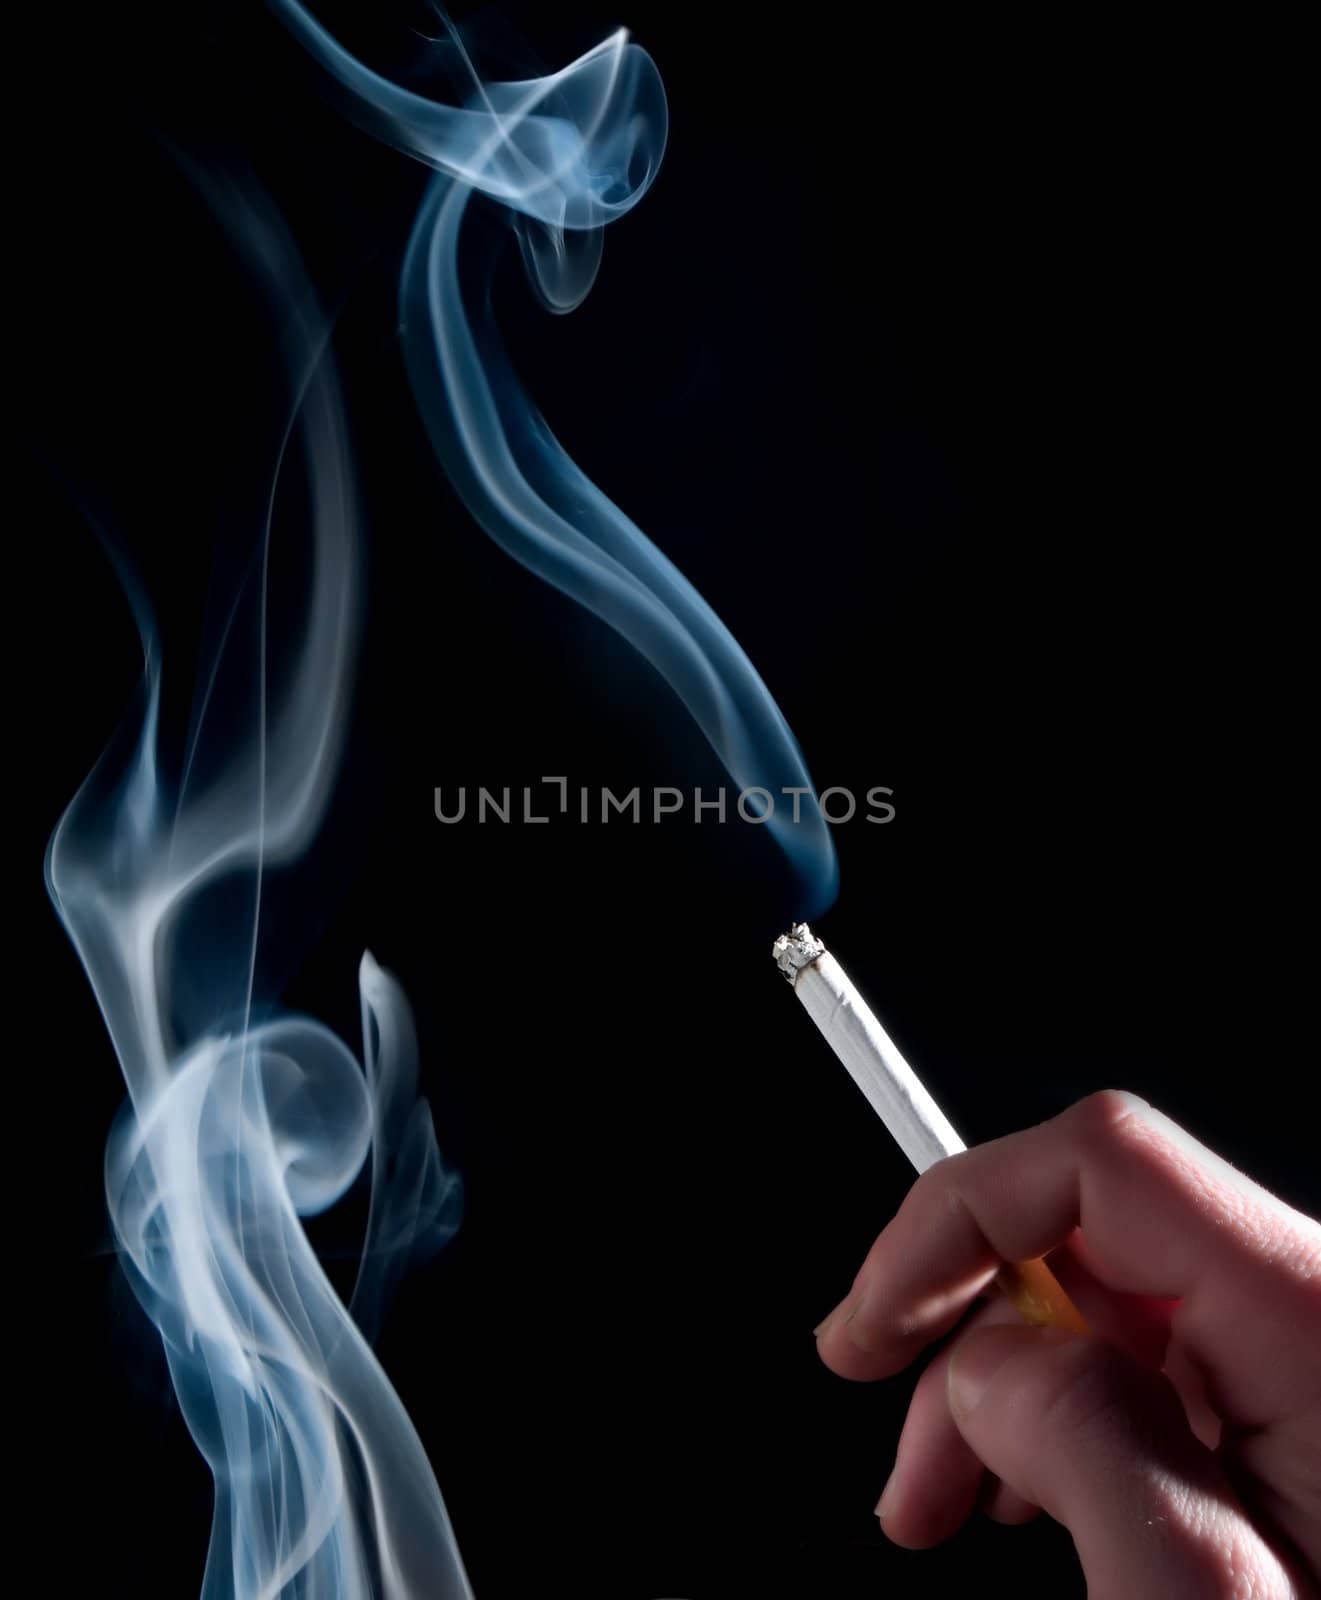 Smoking a cigarette by henrischmit